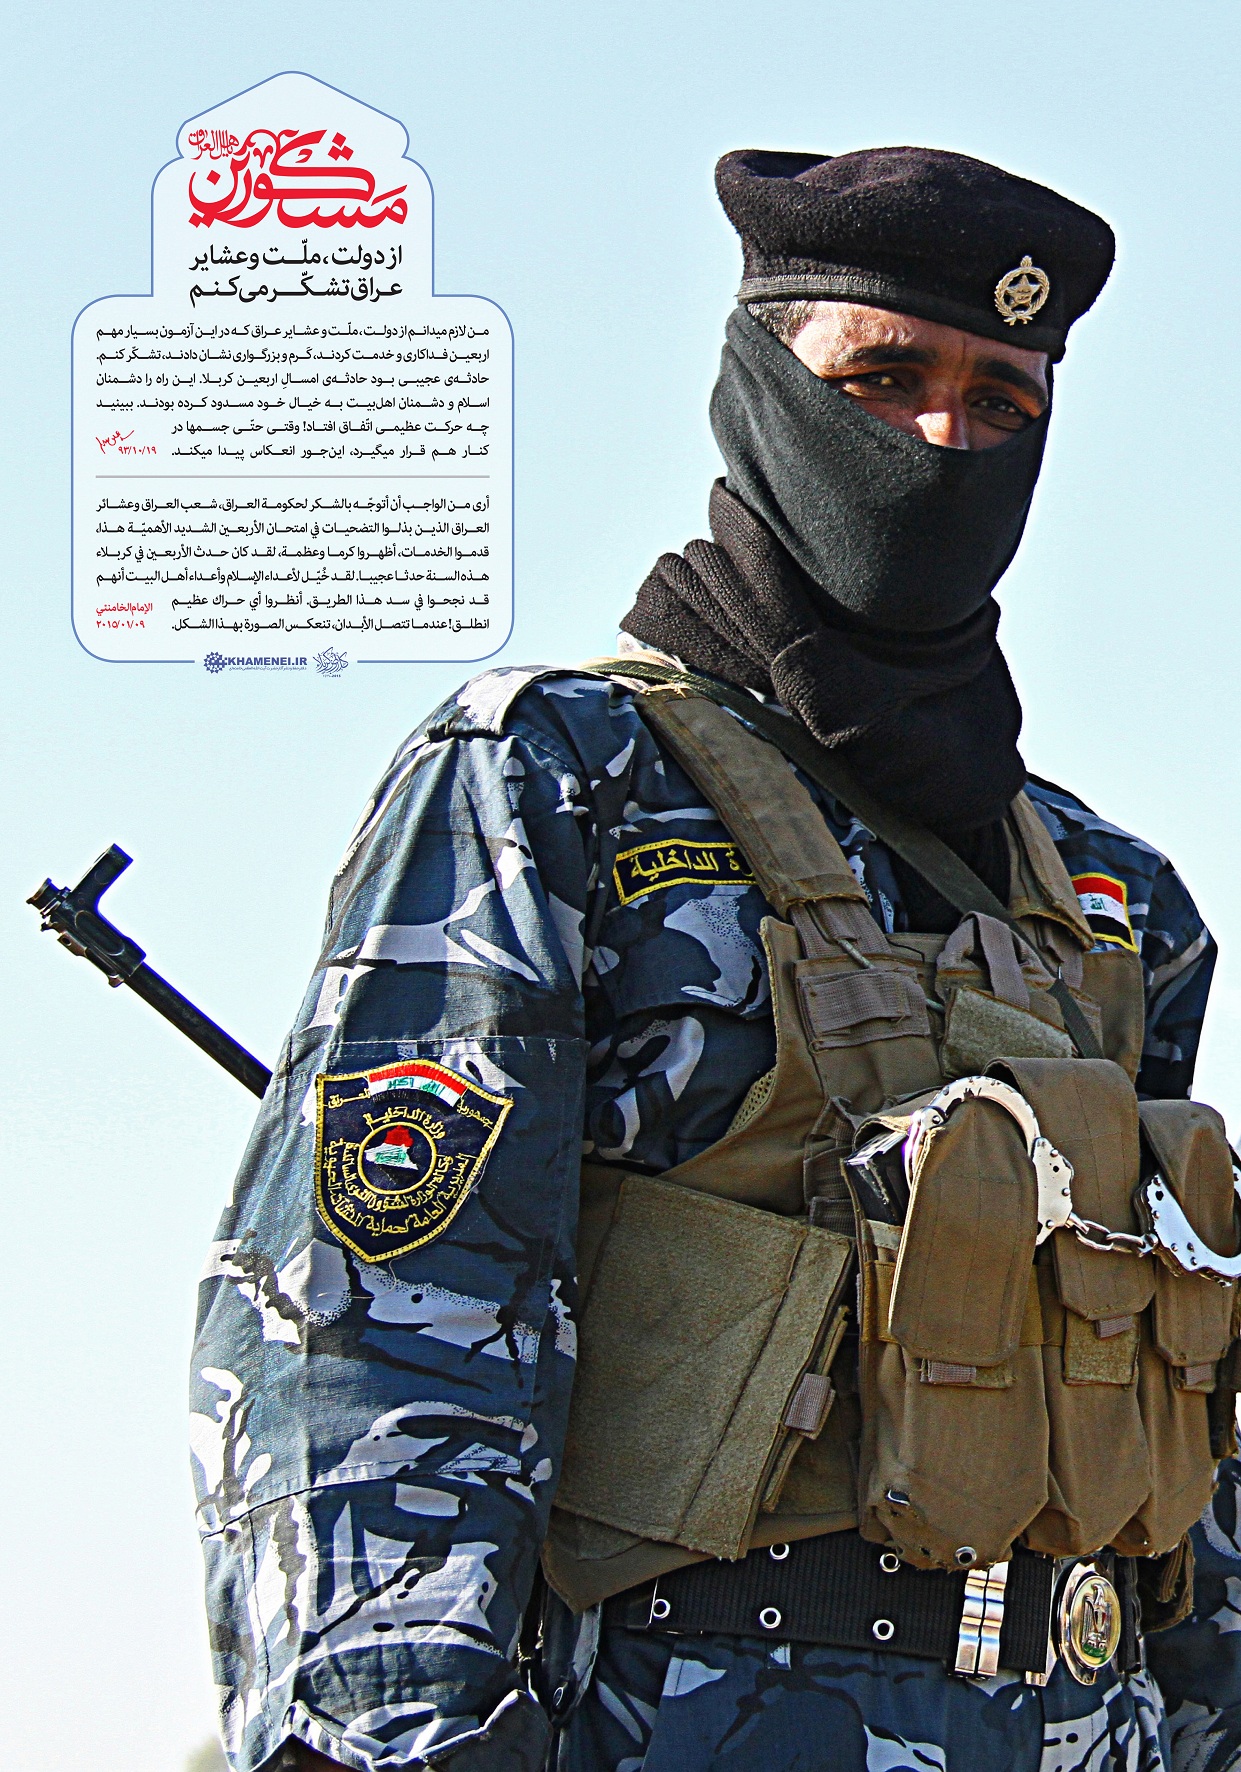 مجموعه پوسترهای "مشکورین" / مجموعه پوستر تشکر رهبر انقلاب از ملت و عشایر و دولت عراق